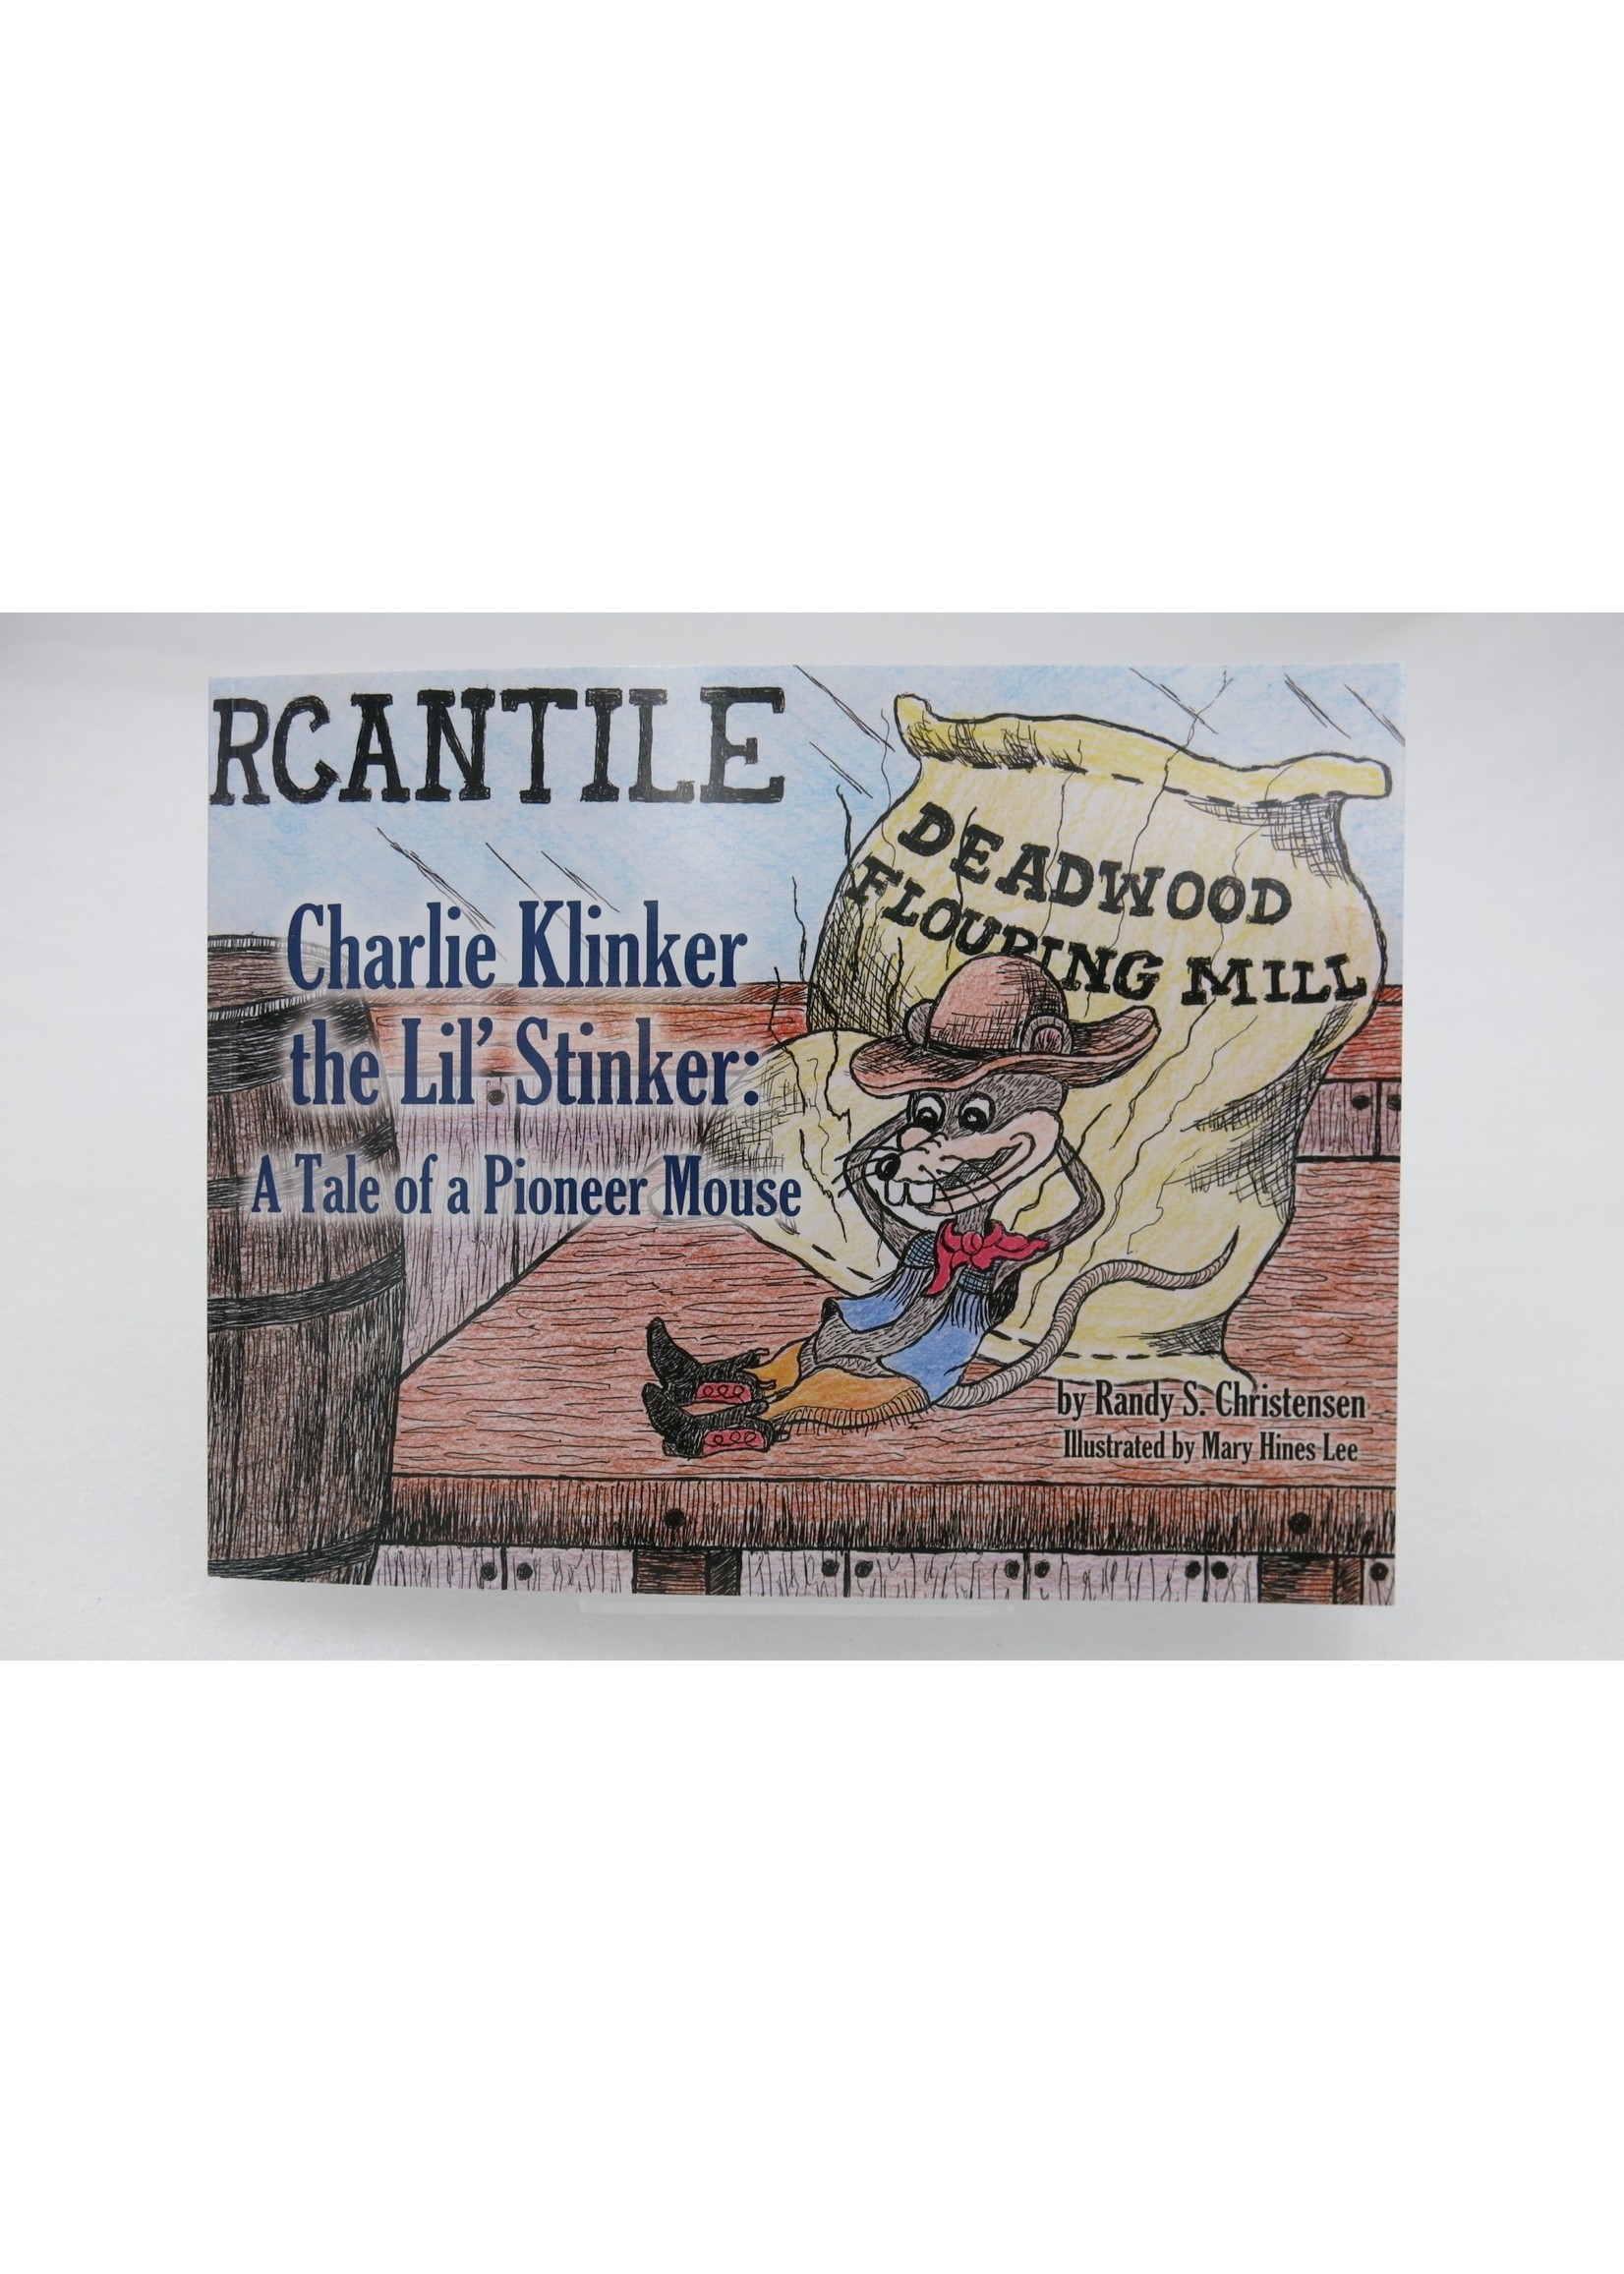 Charlie Klinker: Pioneer Mouse